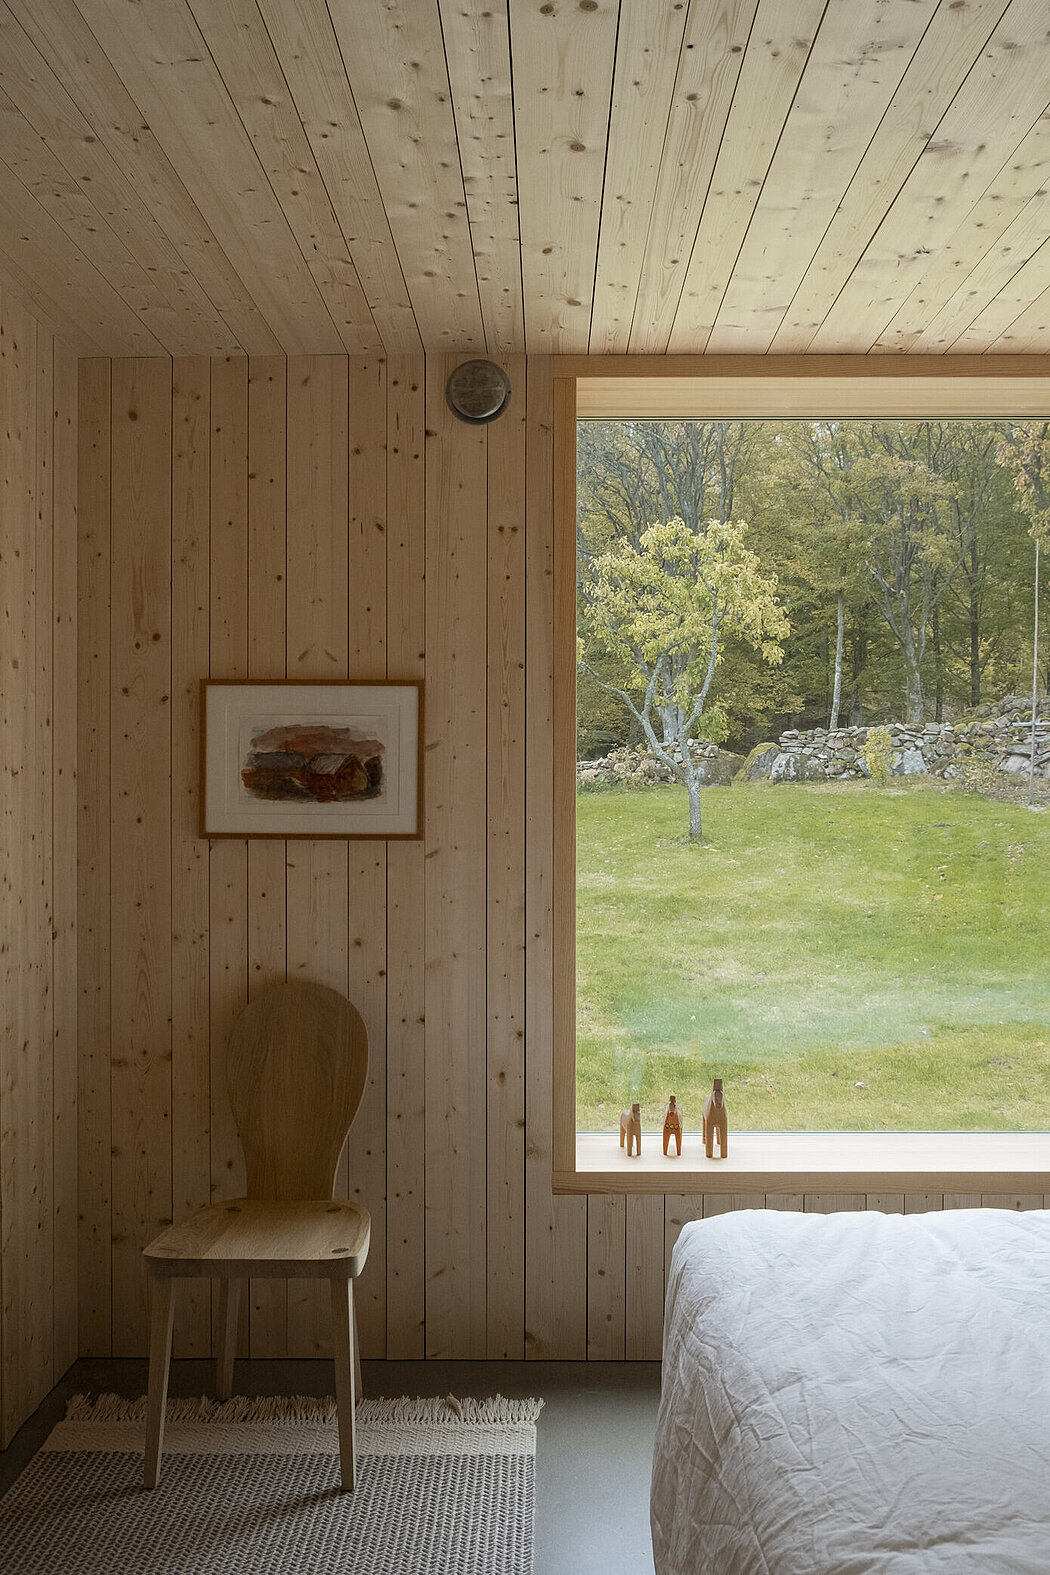 Rörbäck Forest Retreat: A Modern Wooden Hideaway